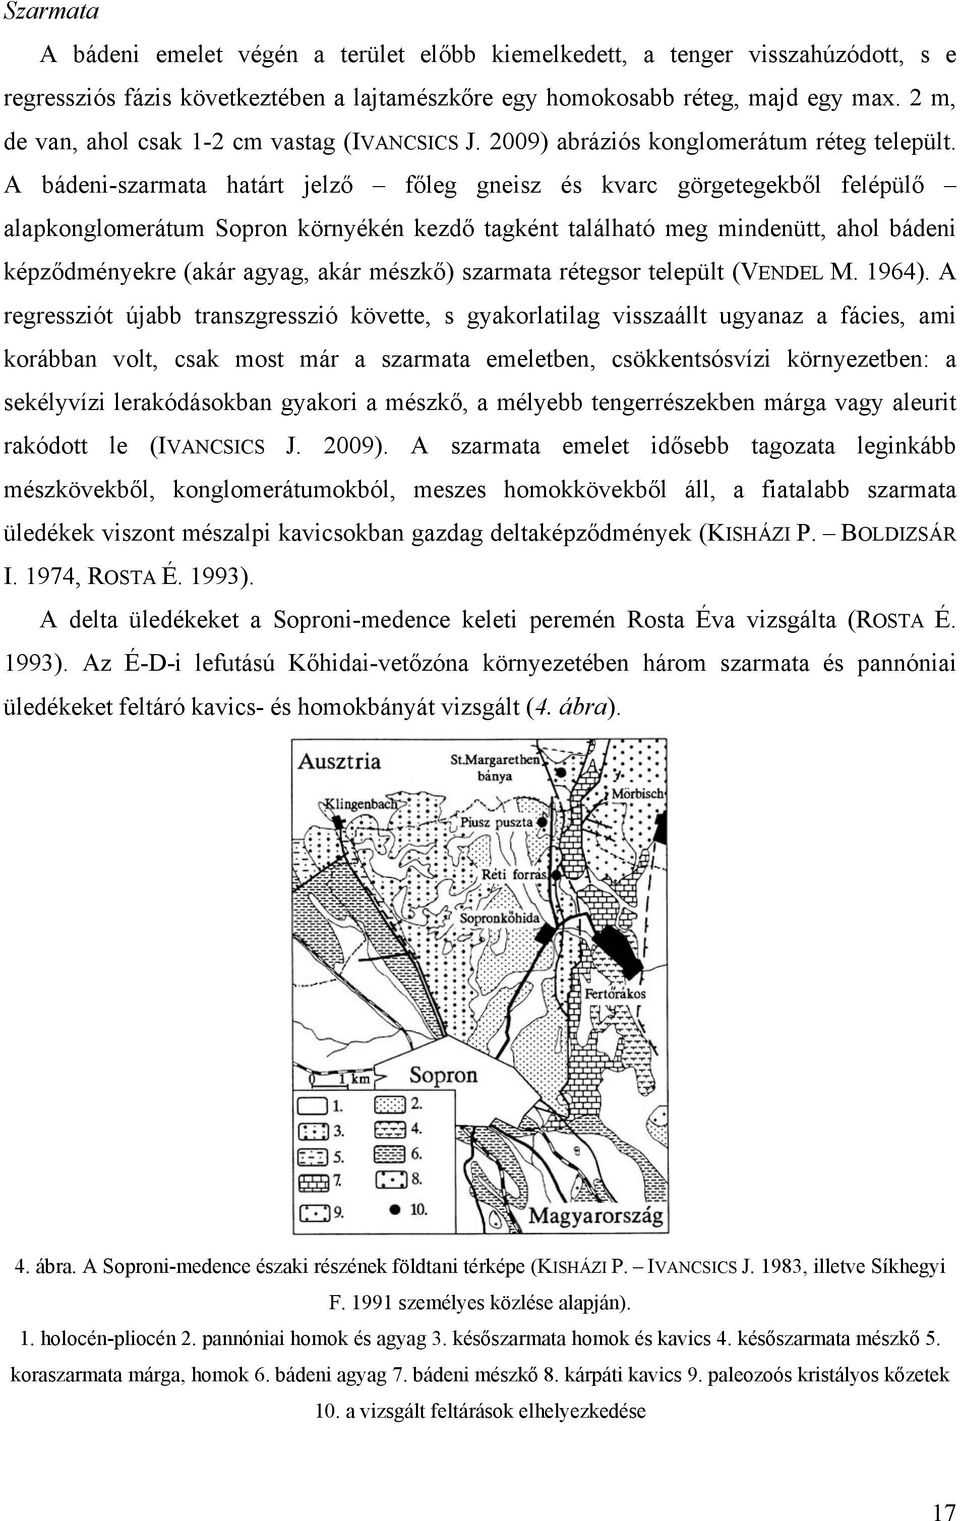 A bádeni-szarmata határt jelző főleg gneisz és kvarc görgetegekből felépülő alapkonglomerátum Sopron környékén kezdő tagként található meg mindenütt, ahol bádeni képződményekre (akár agyag, akár